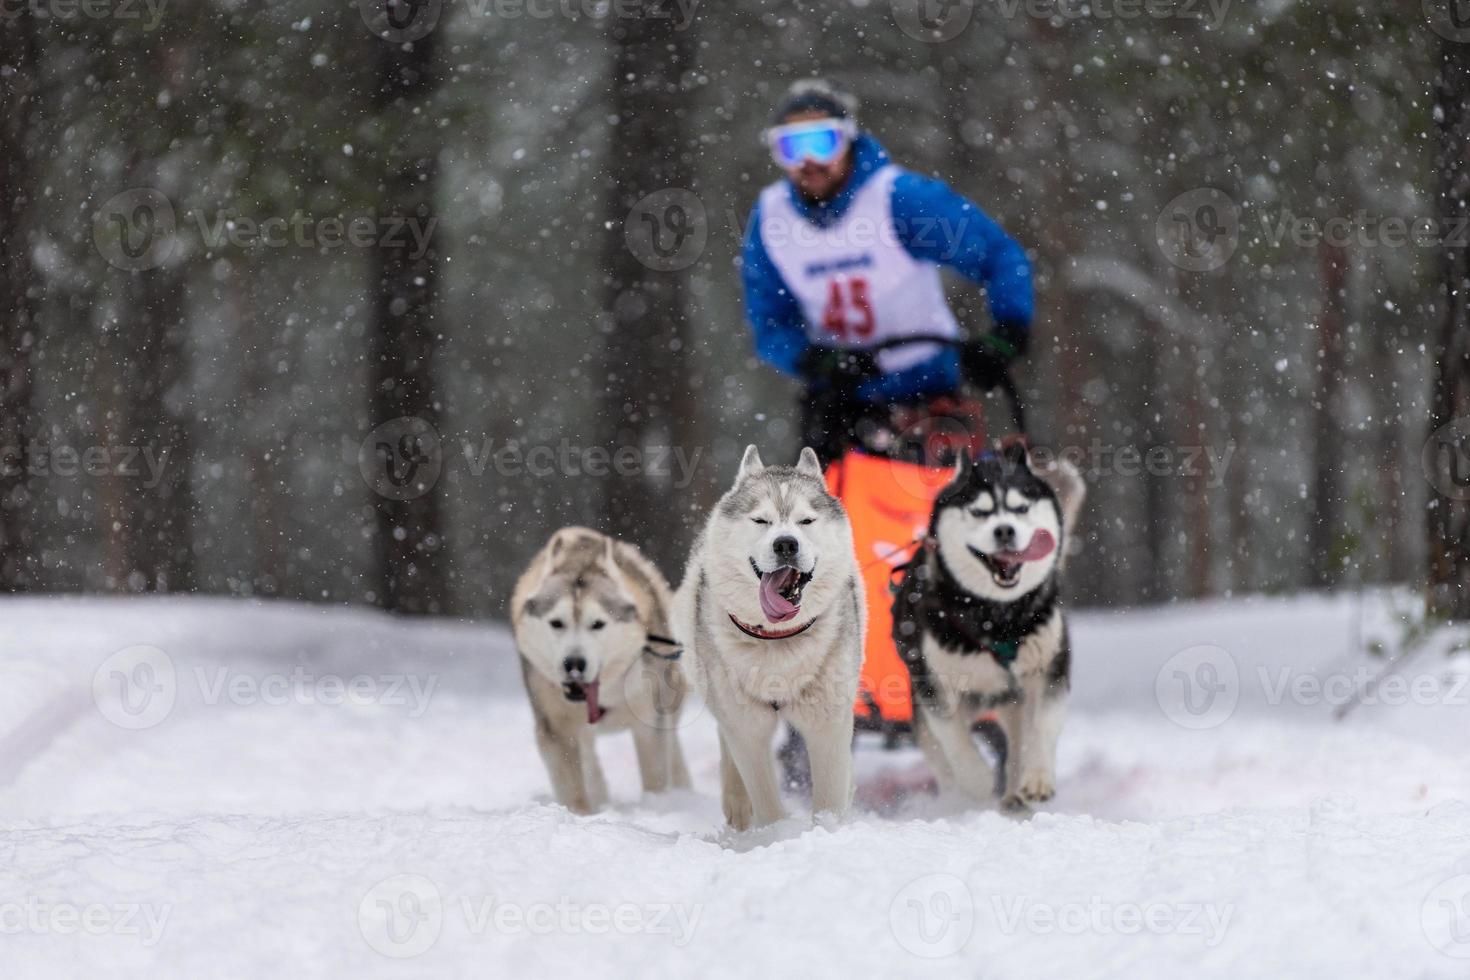 corrida de cães de trenó. equipe de cães de trenó husky puxa um trenó com motorista de cães. competição de inverno. foto